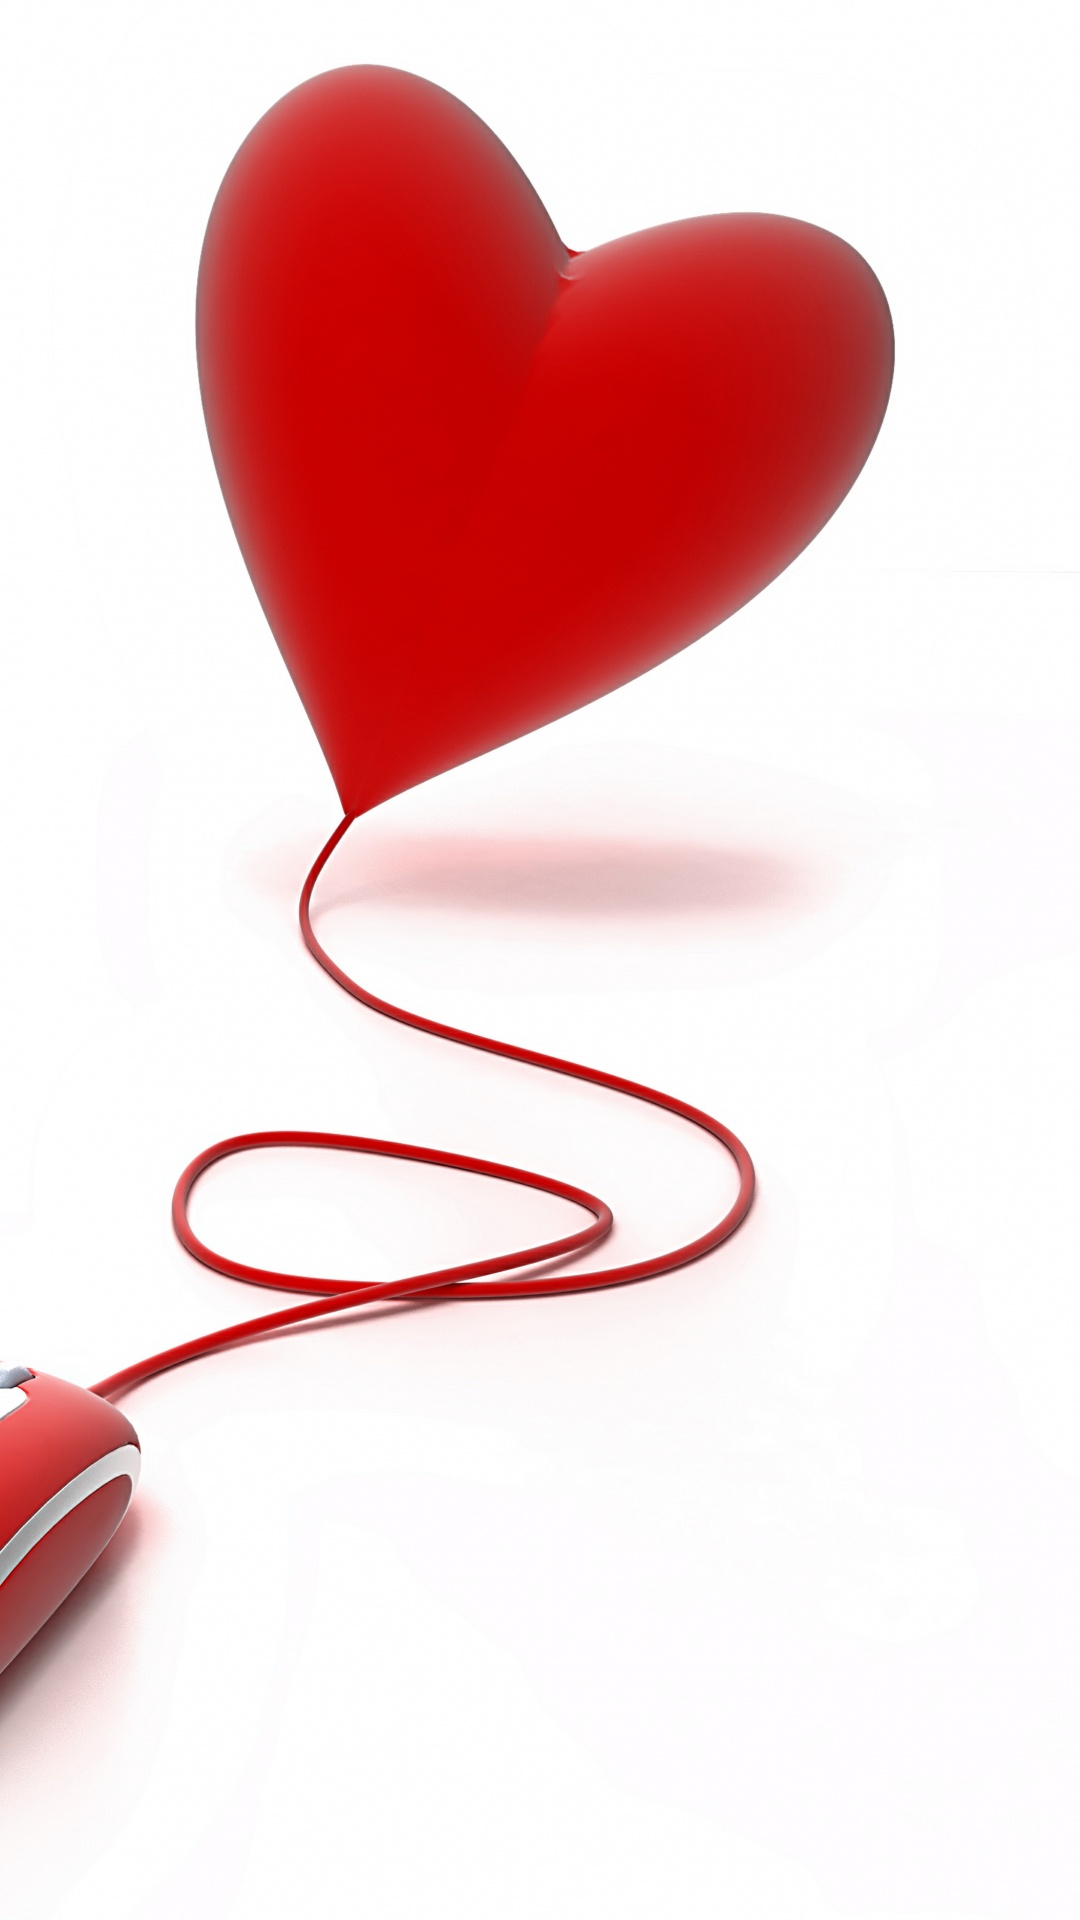 心脏, 红色的, 爱情, 情书, 符号 壁纸 1080x1920 允许